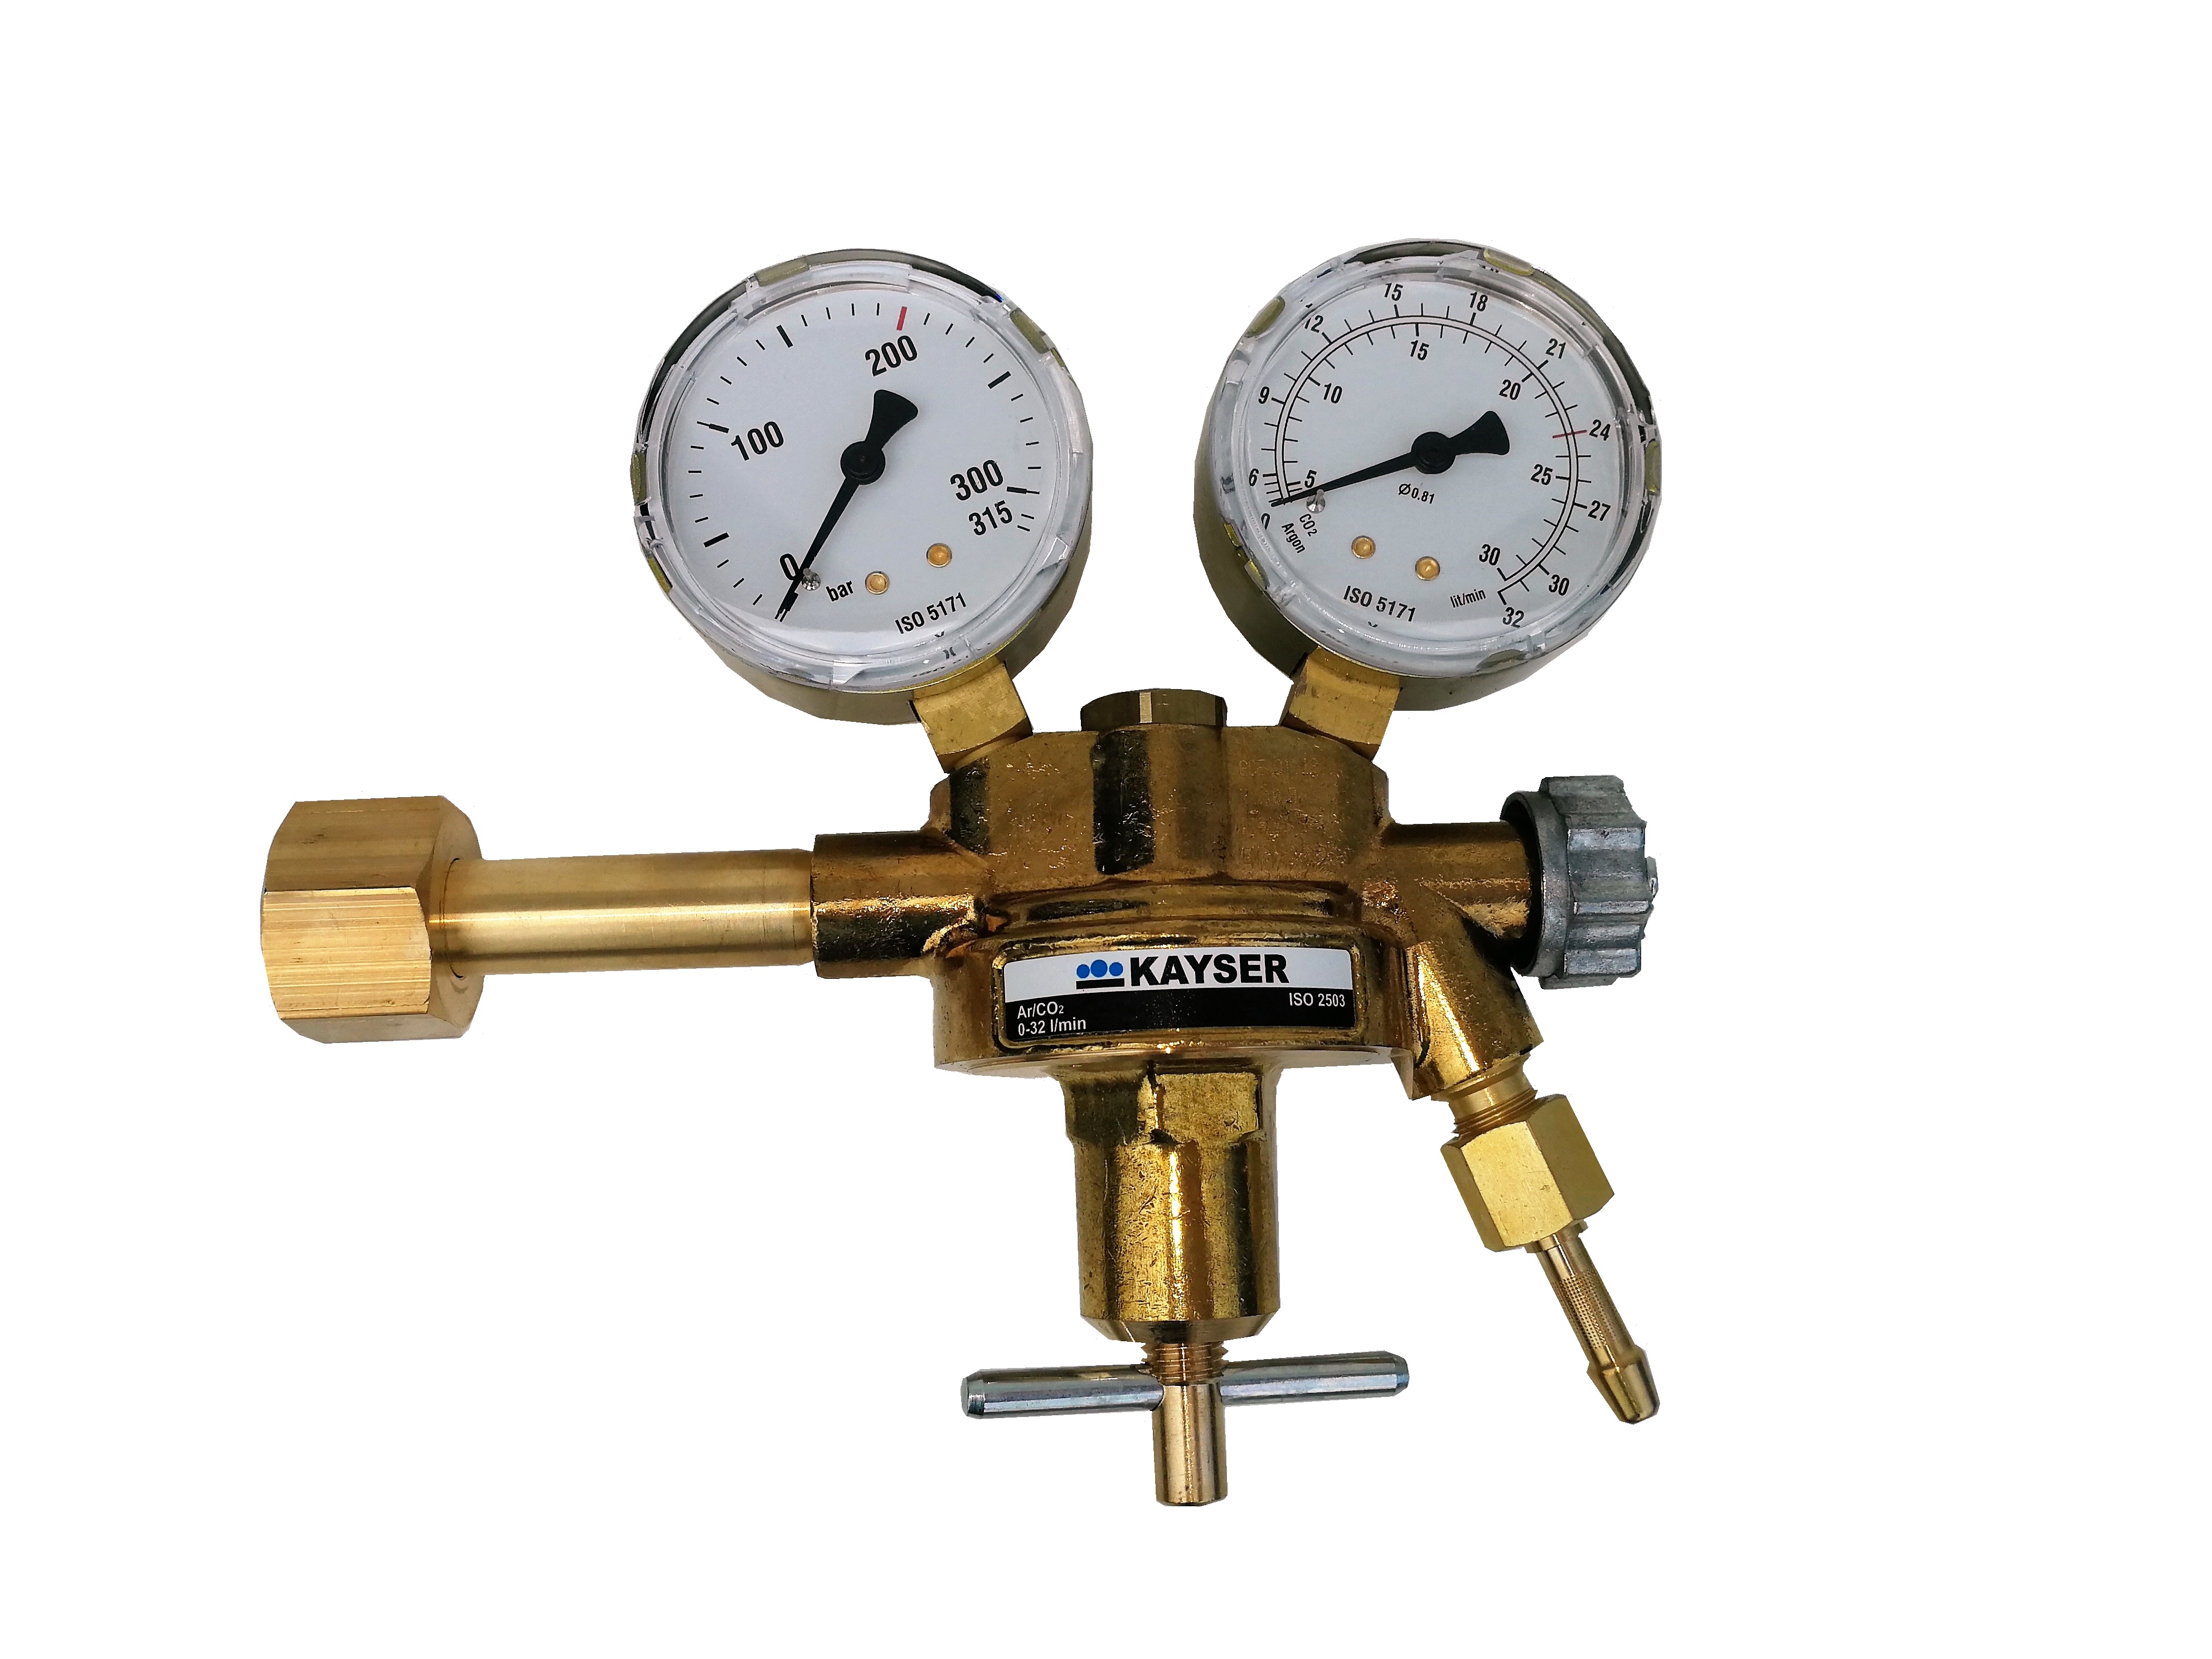 HELO 175314 Druckregler für Argon 0-30 L/Min Schutz- und Schweißgas Druckminderer mit 2 Absperrventilen und Manometer für Schweißgeräte. CO2 und Schutzgas Flaschen